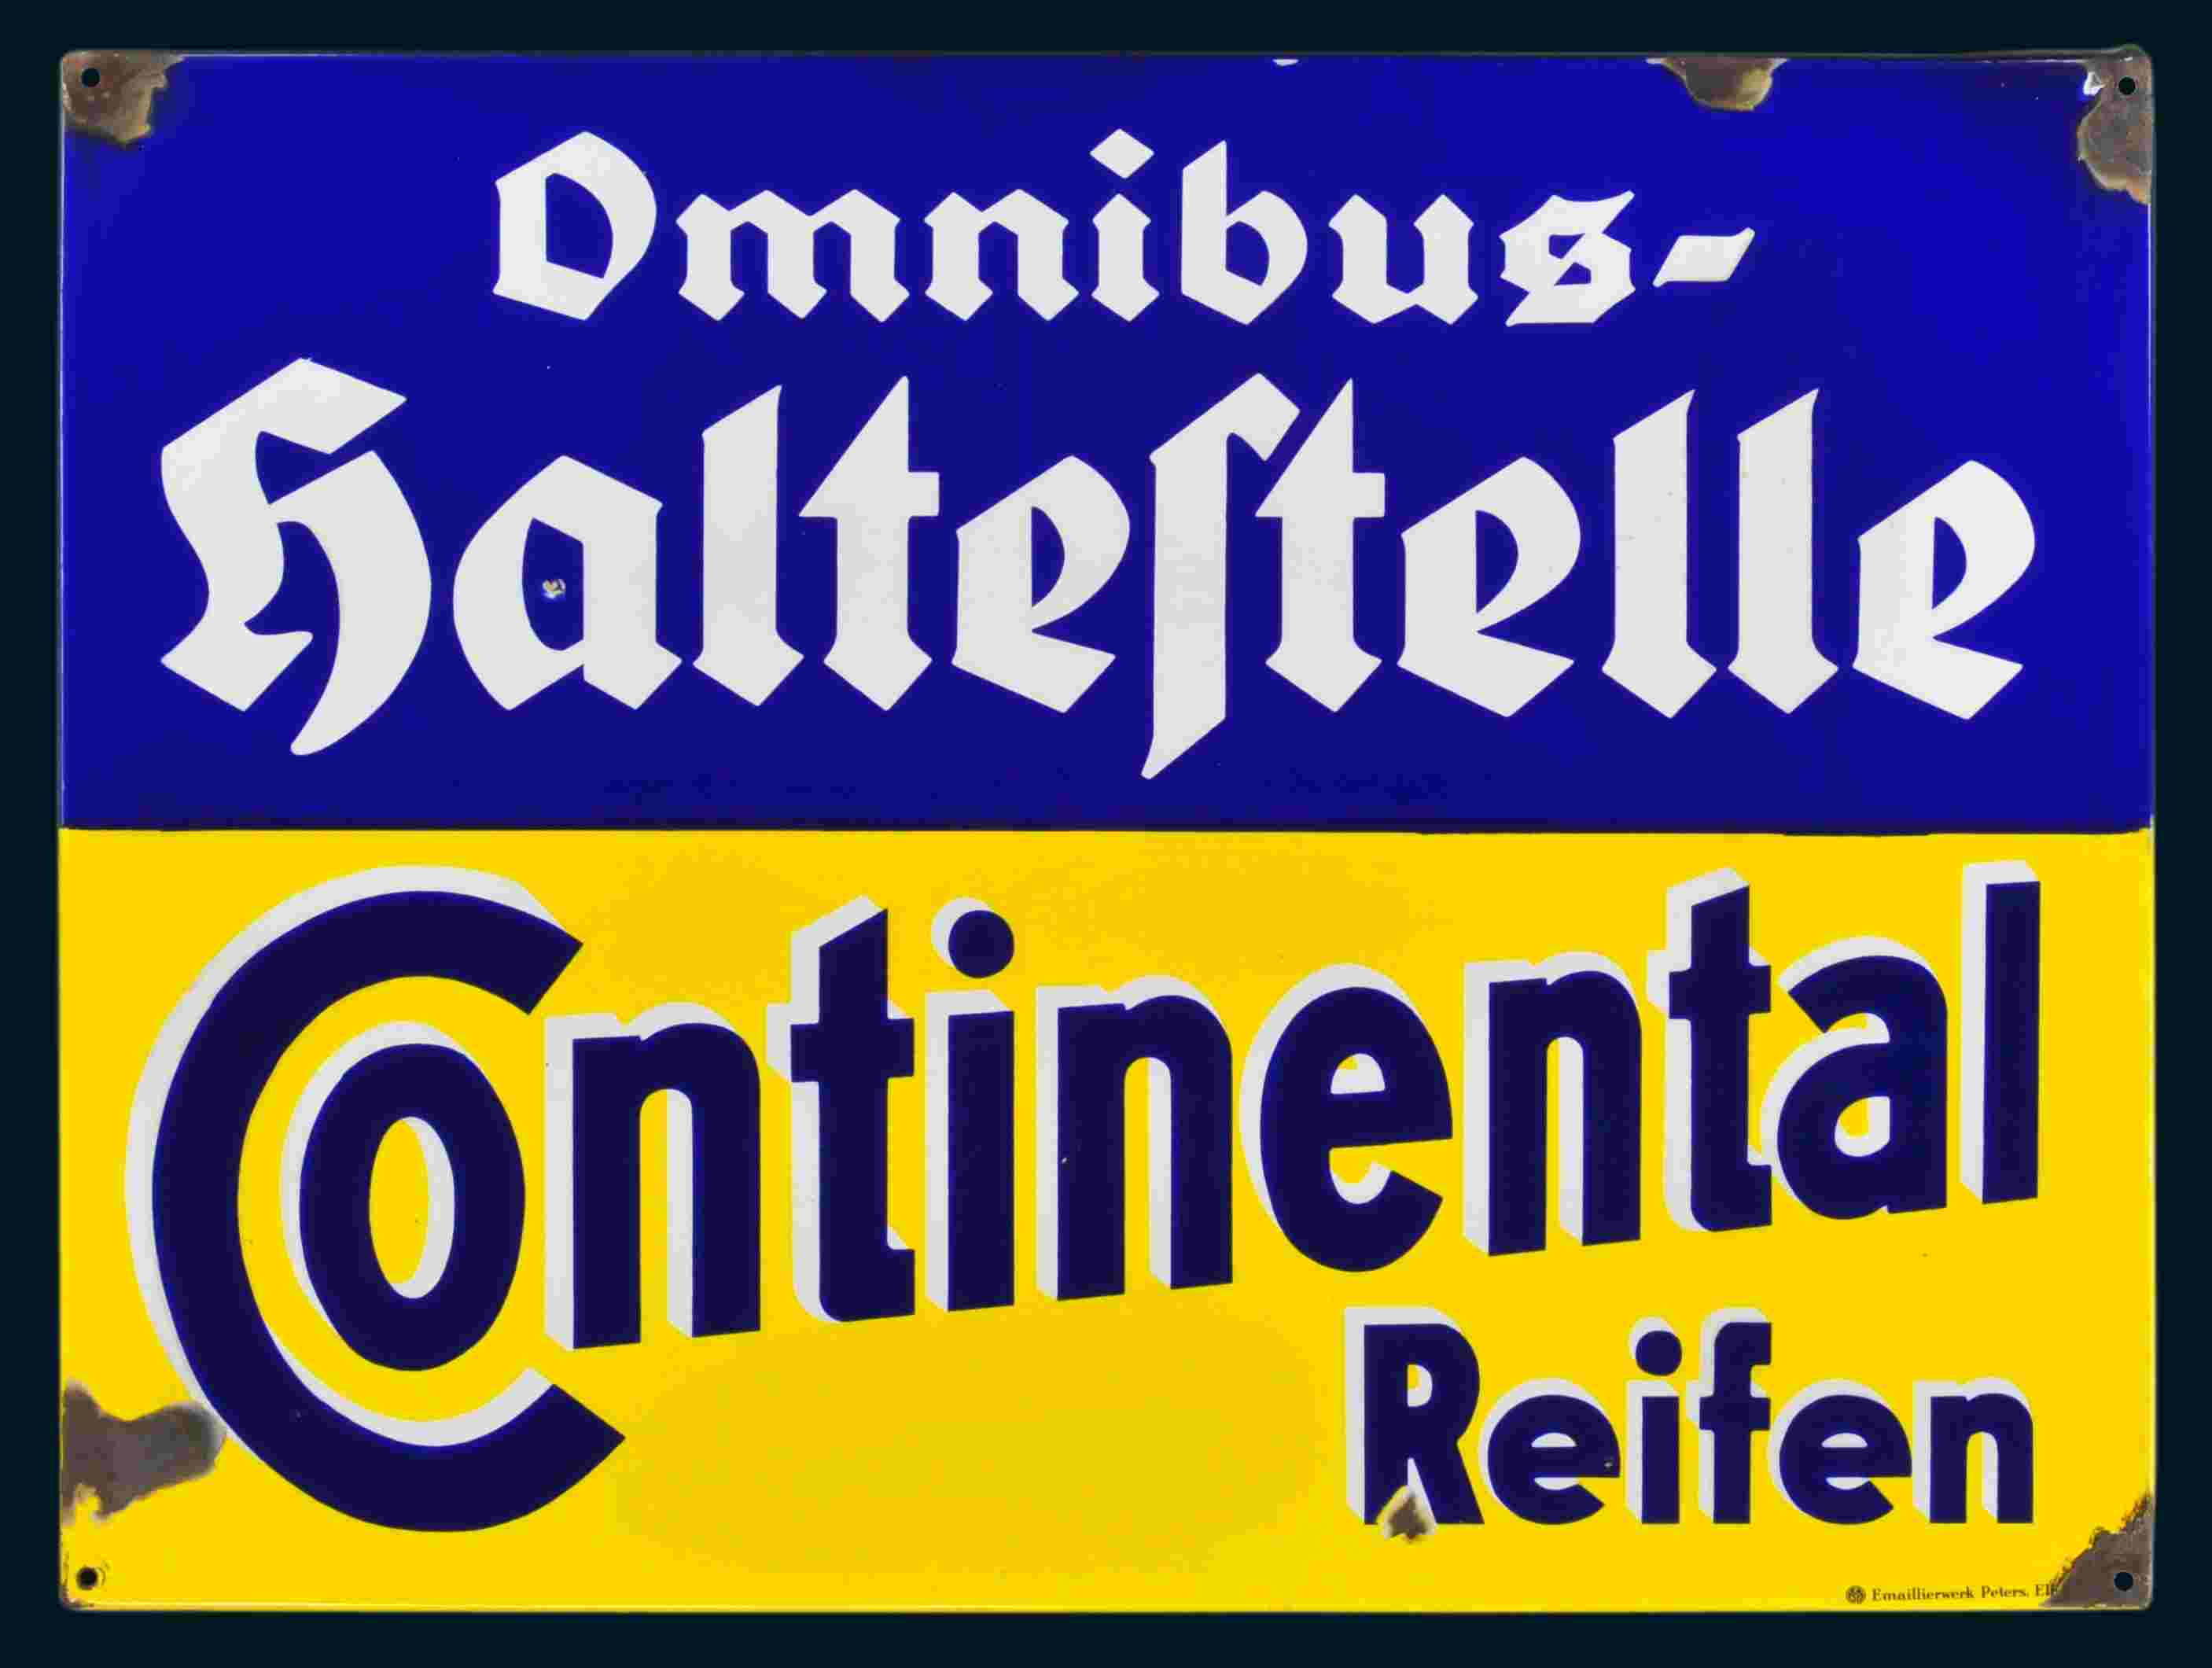 Continental Reifen / Omnibus Haltestelle 